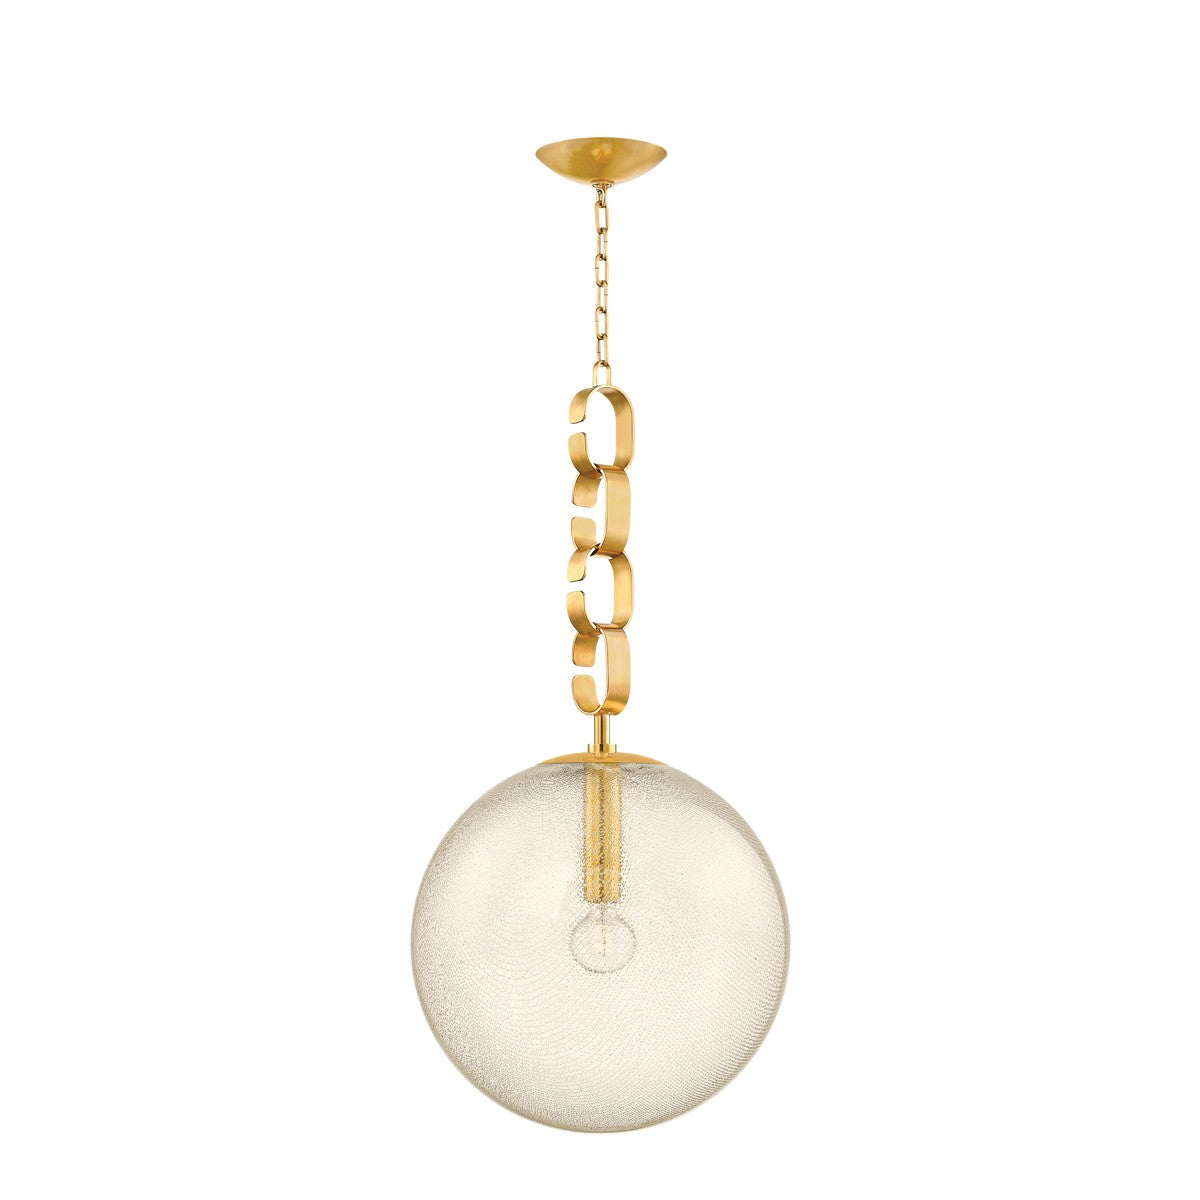 Corbett Lighting - 374-18-VB - One Light Pendant - Nessa - Vintage Brass